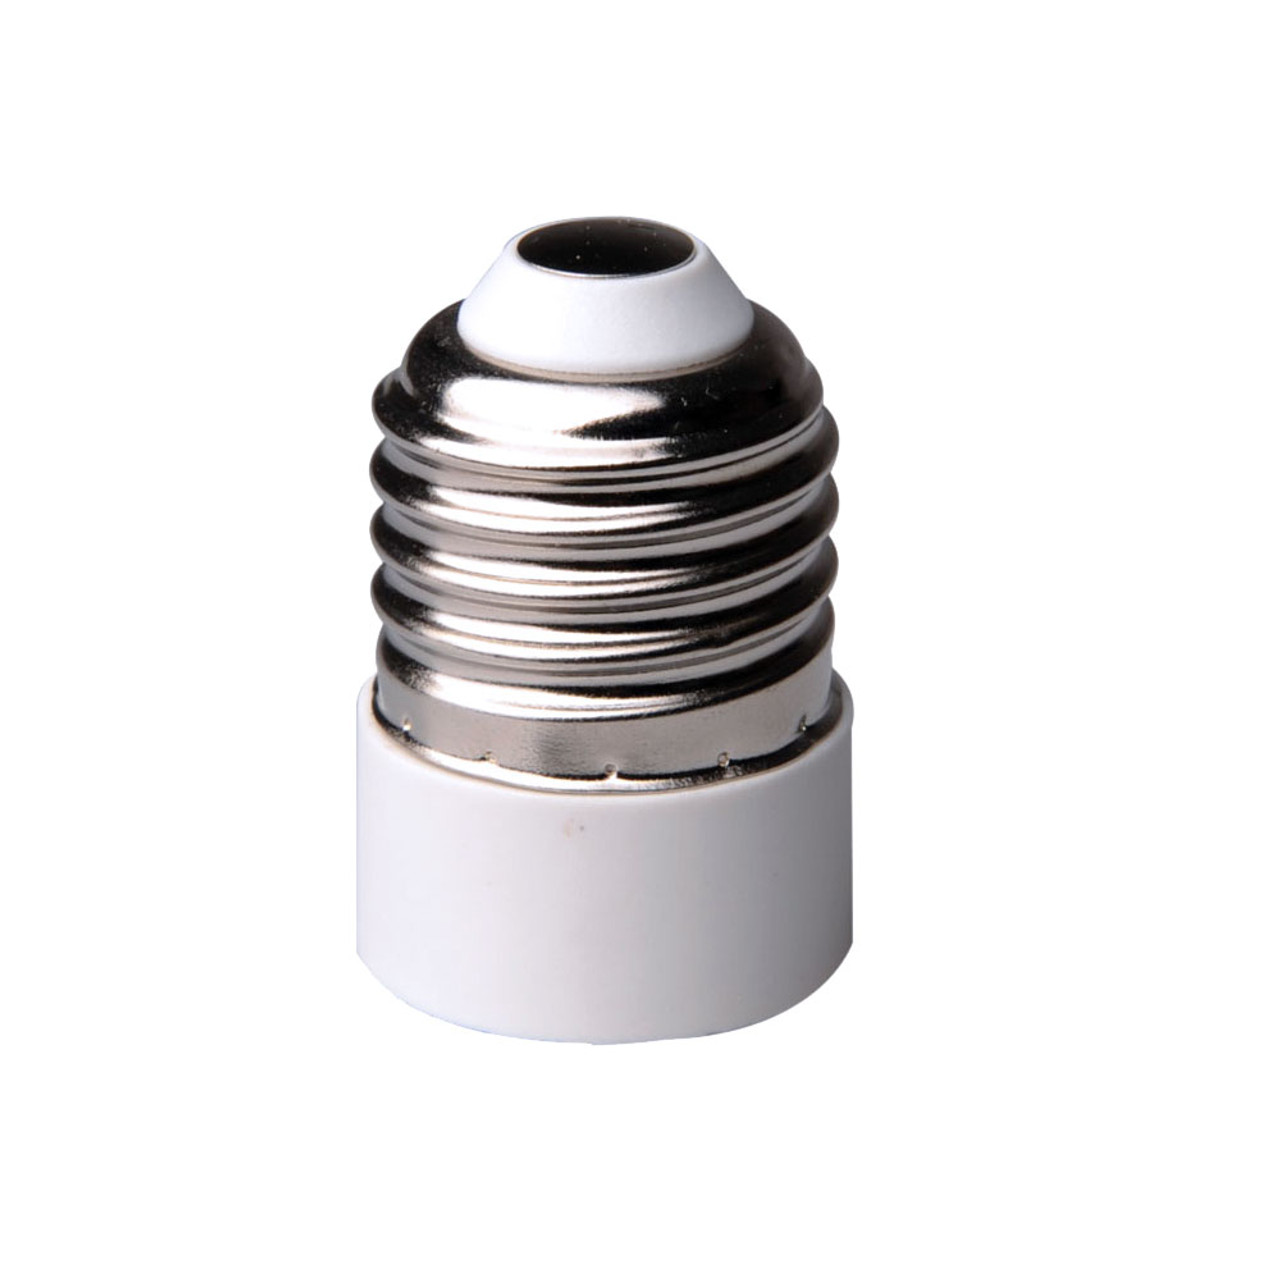 Mega LED - Lamp Adaptor - For E26 to E12 (30321) - Apollo Lighting